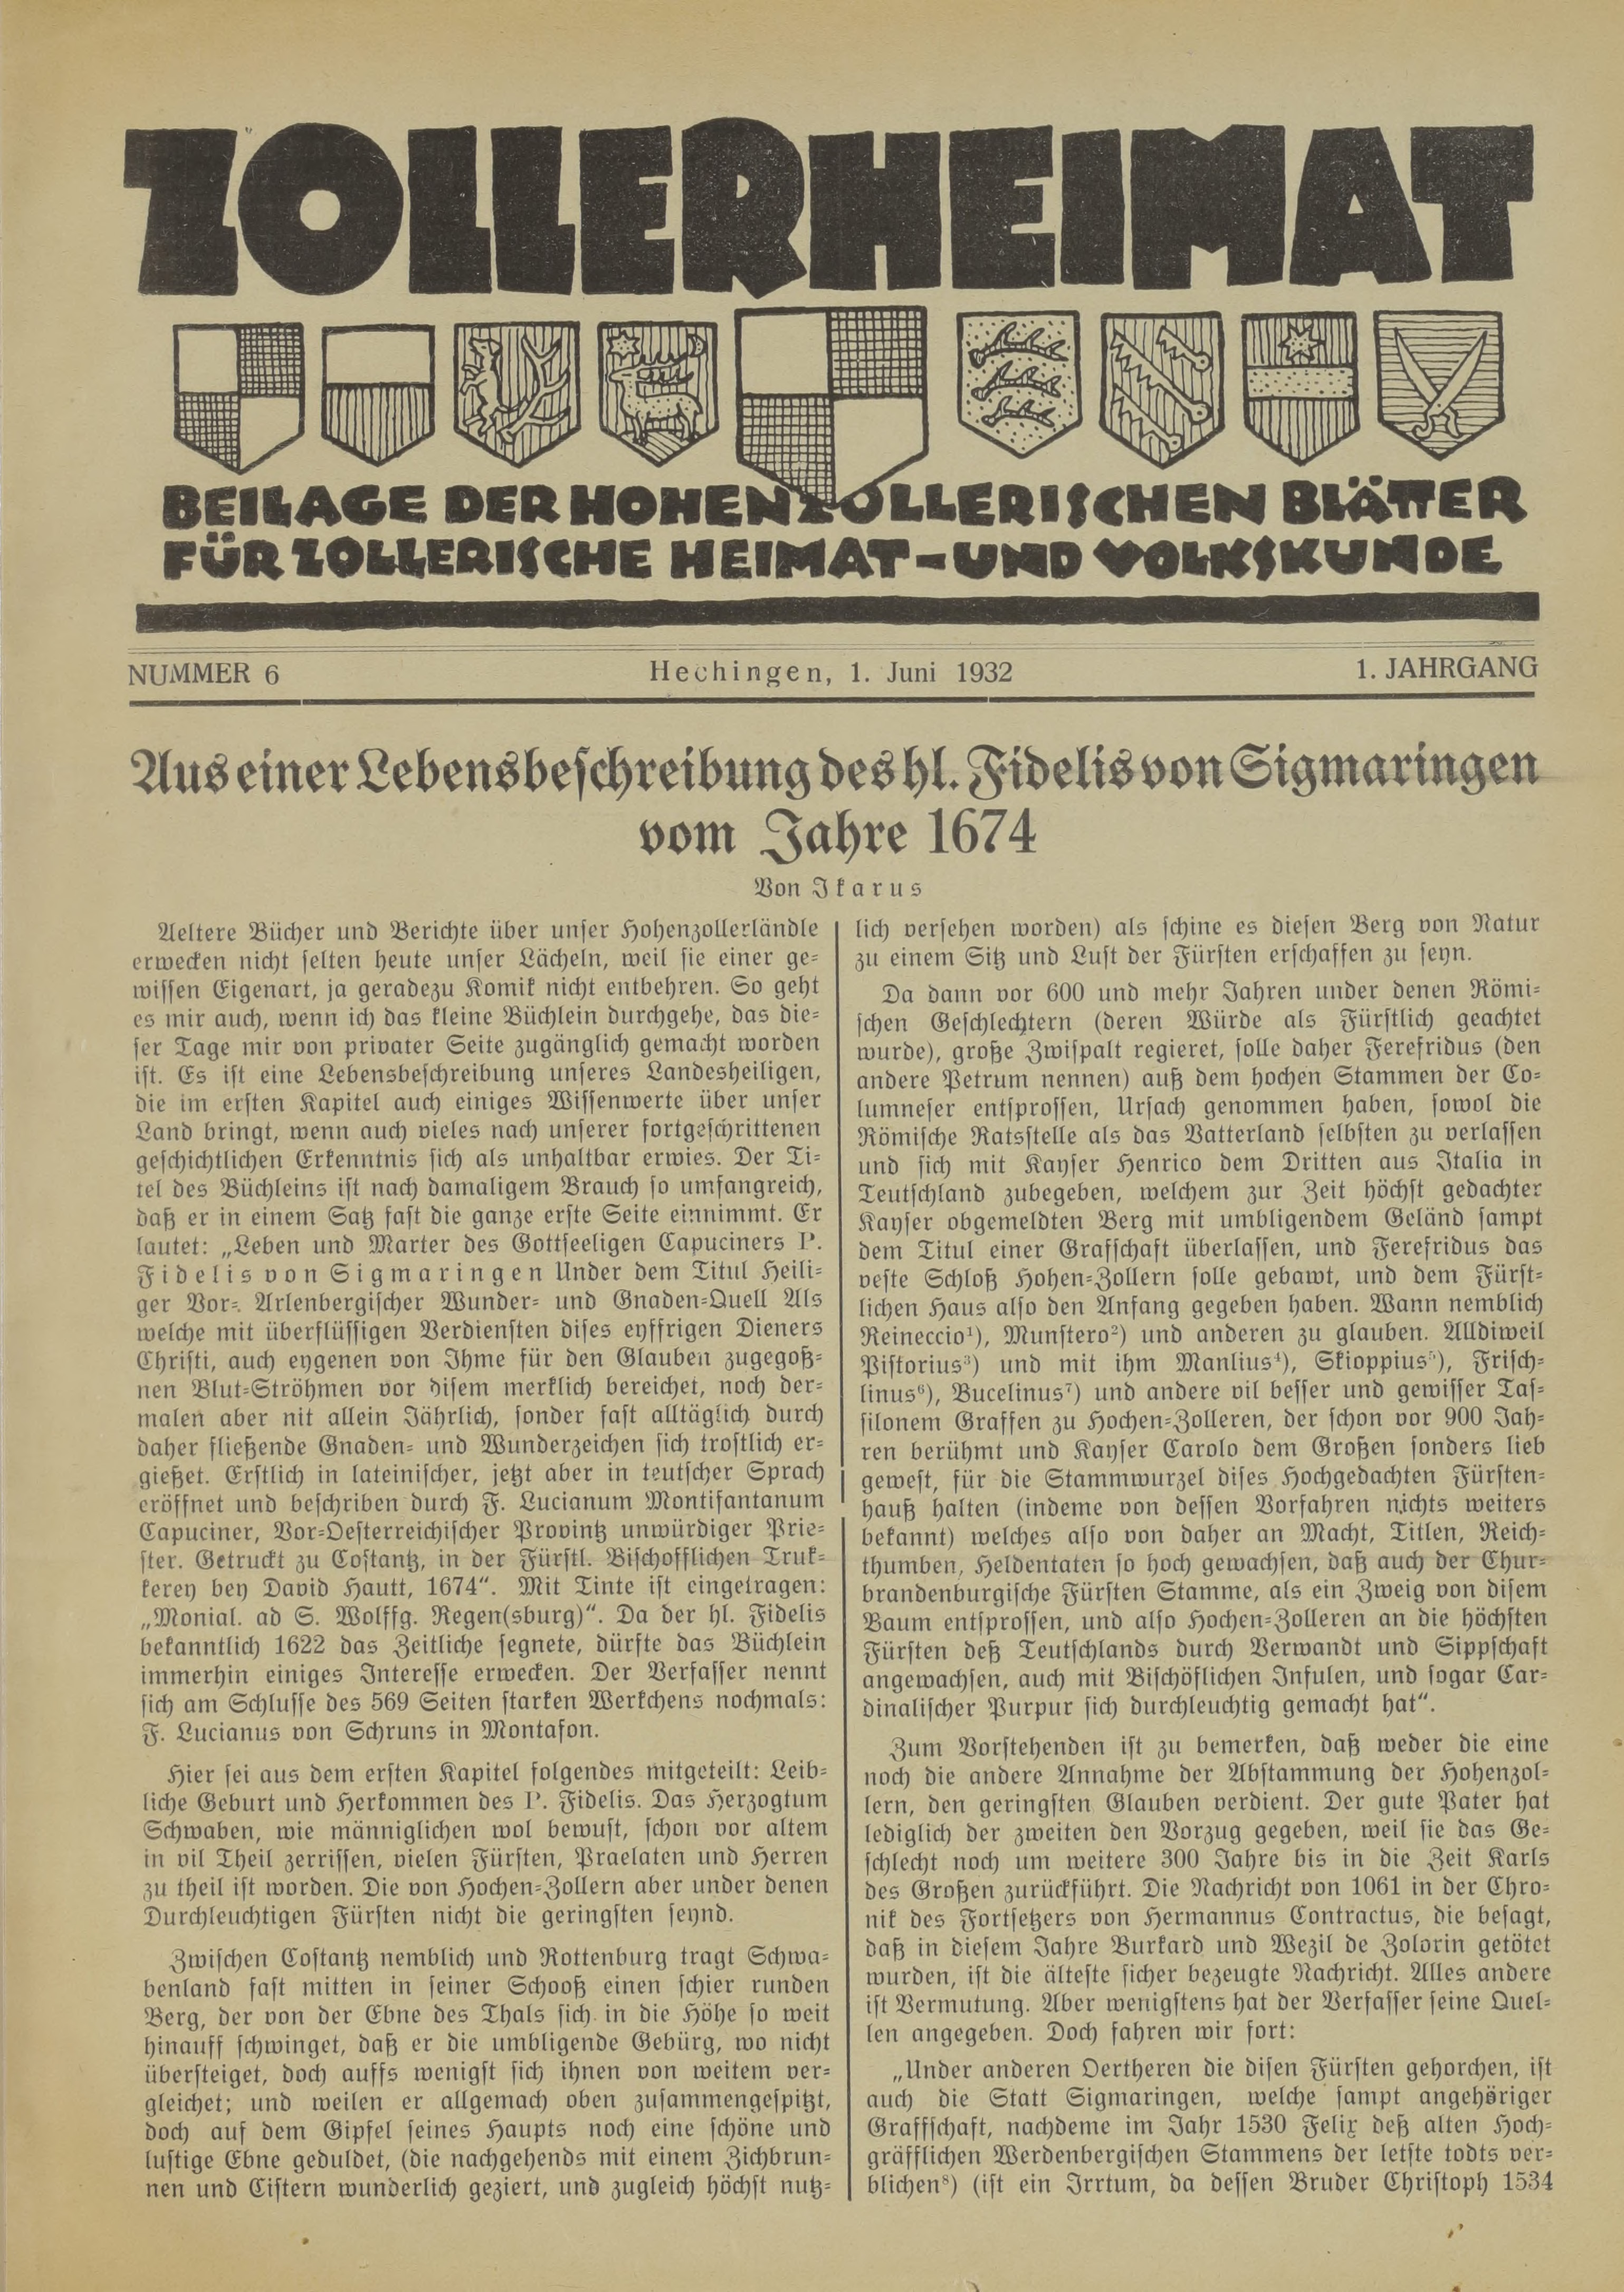                     Ansehen Bd. 1 Nr. 6 (1932): Zollerheimat
                